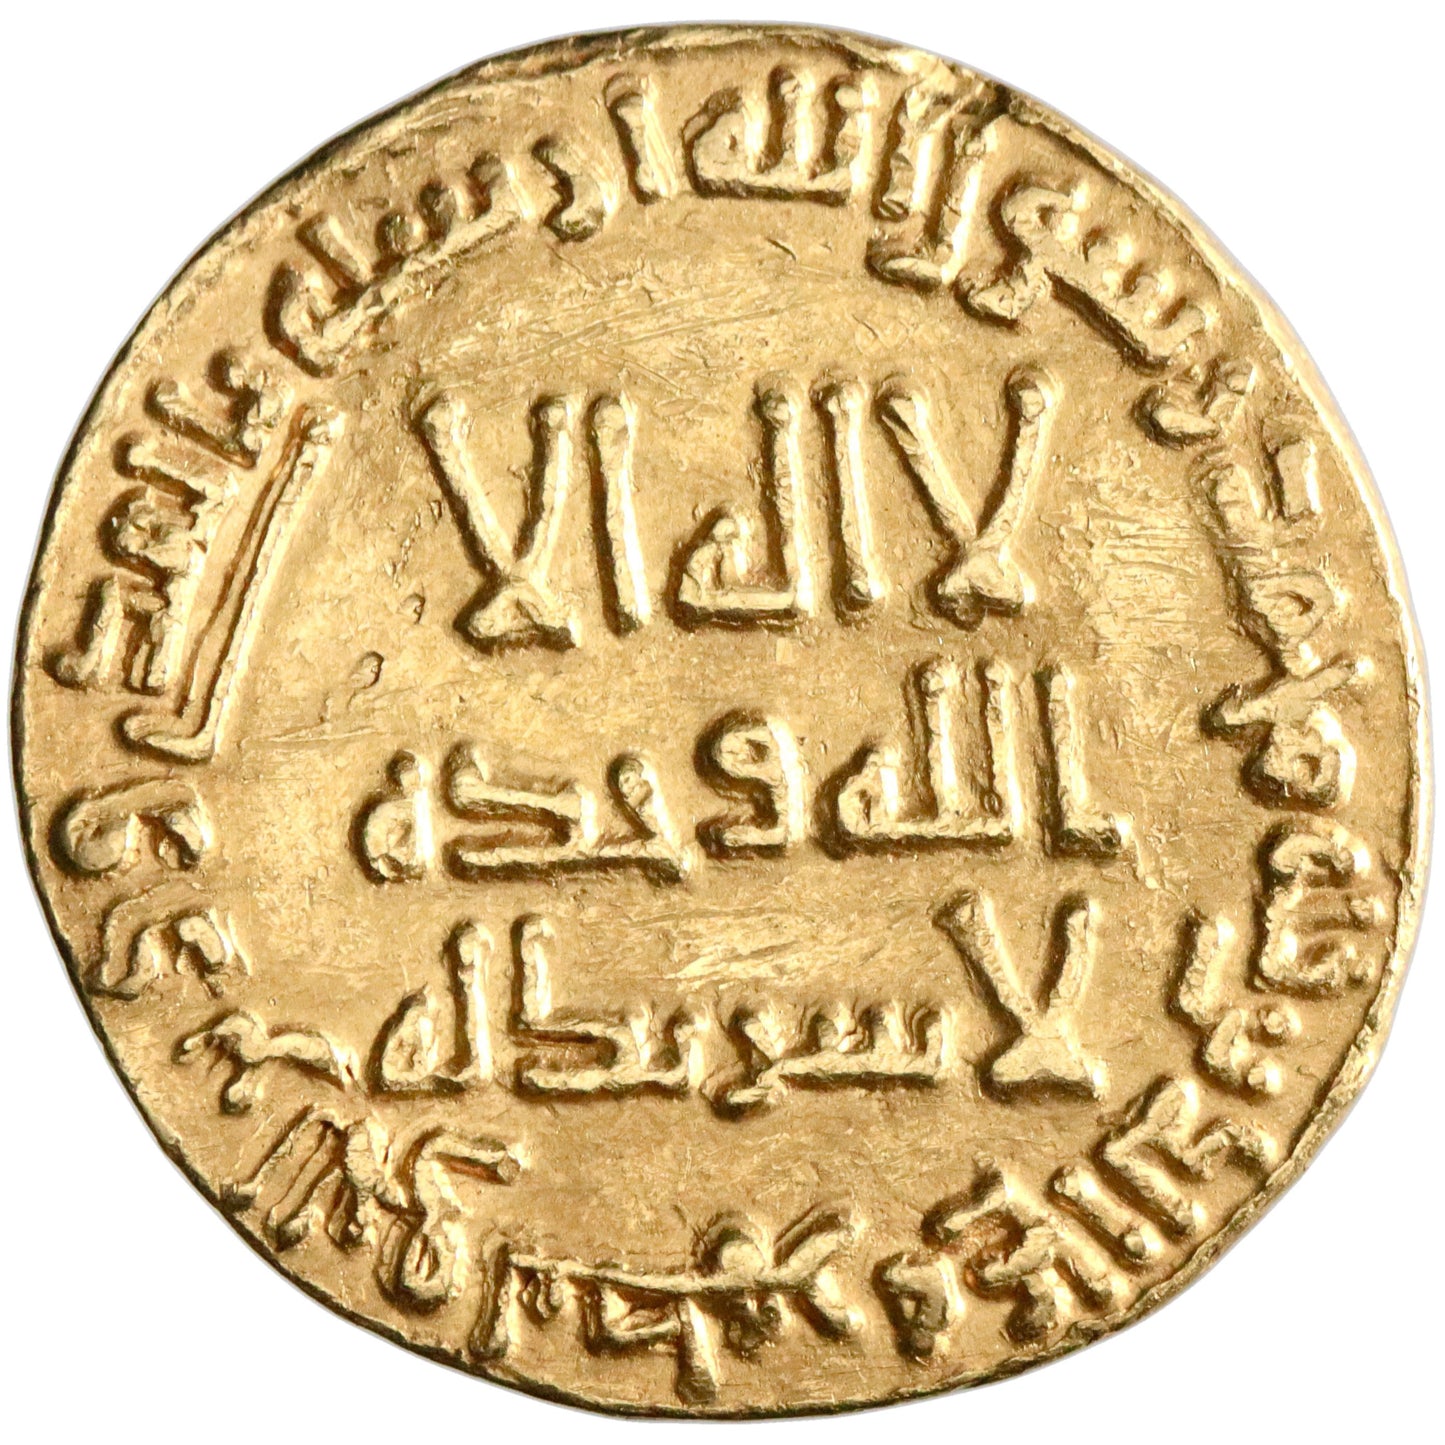 Umayyad, Hisham ibn 'Abd al-Malik, gold dinar, AH 120